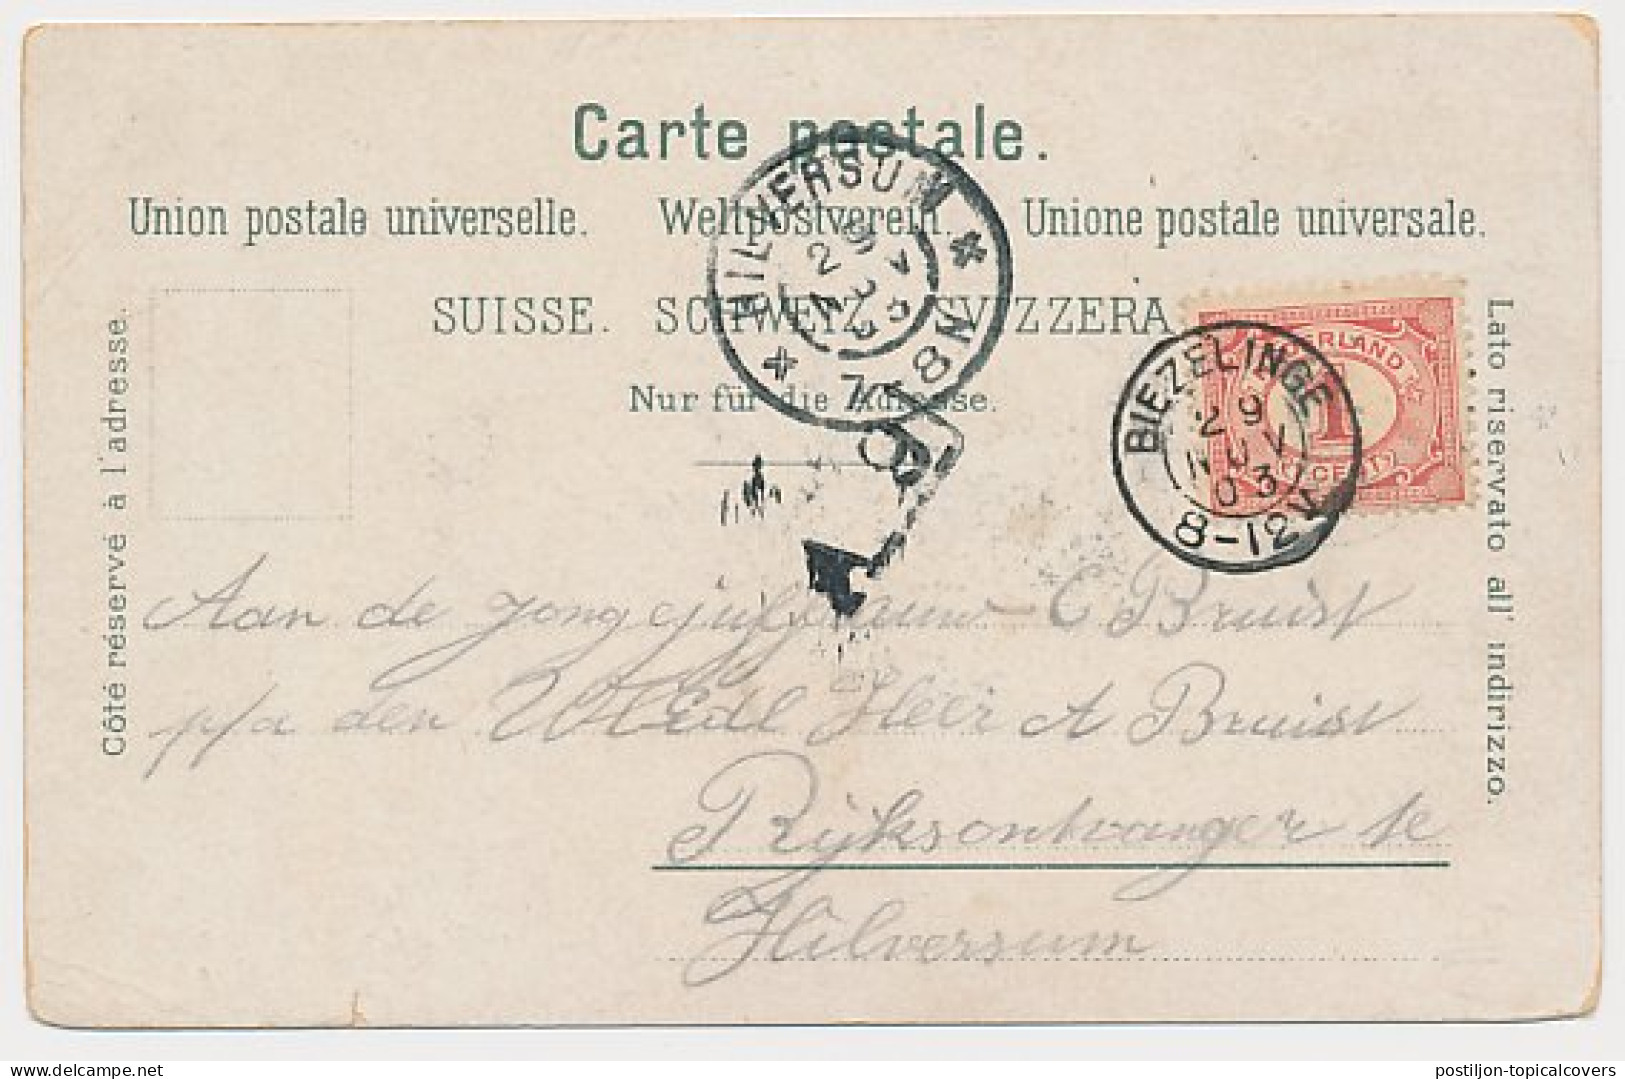 Kleinrondstempel Biezelinge 1903 - Unclassified